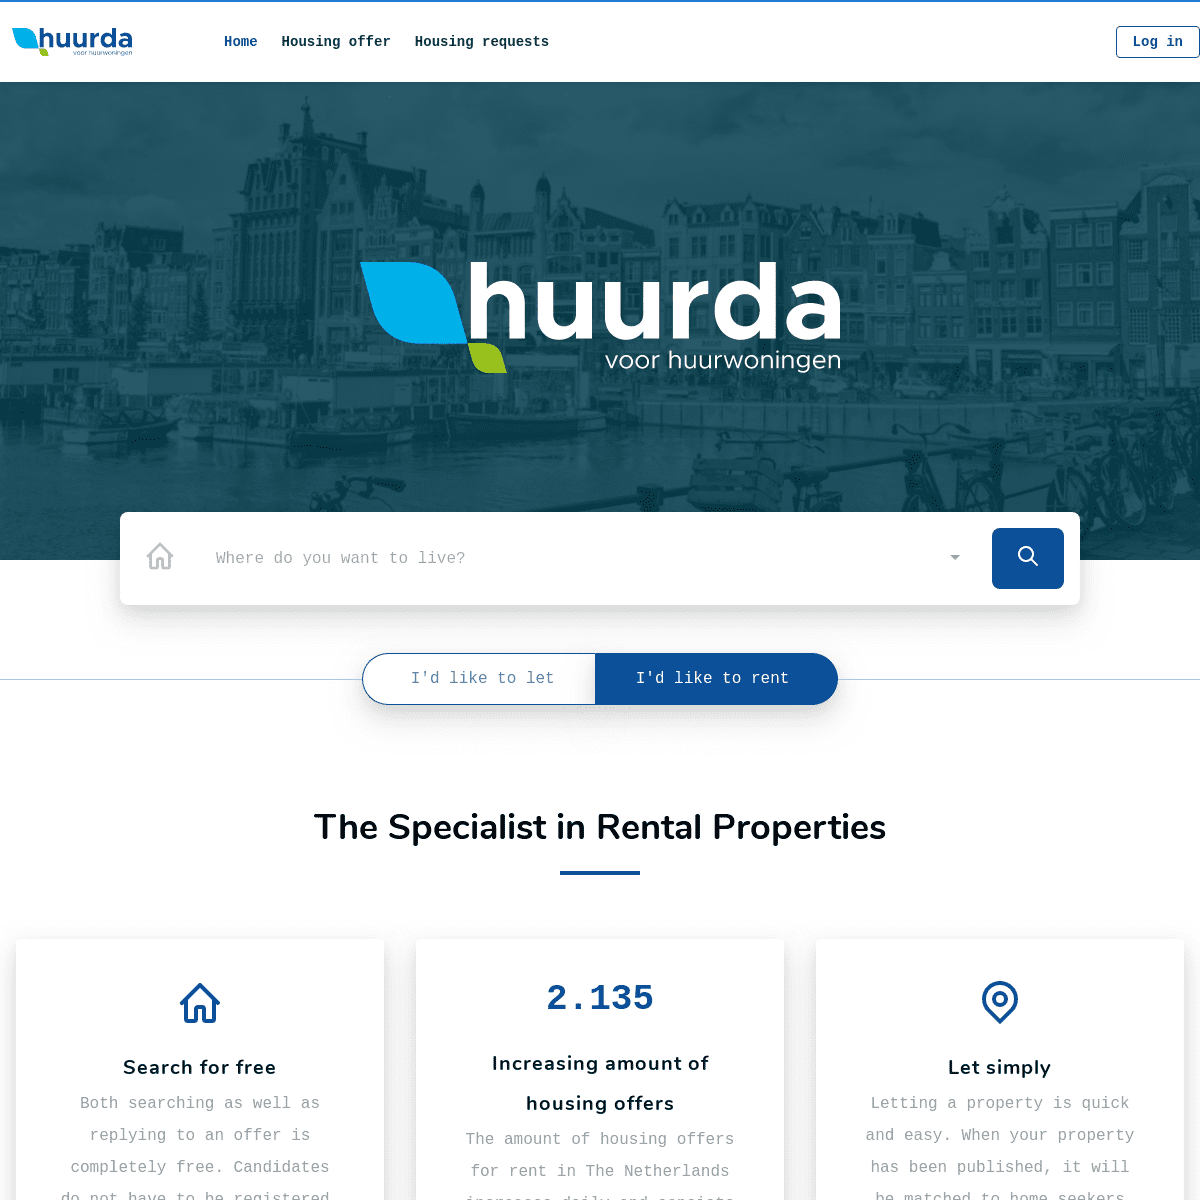 A complete backup of huurda.com